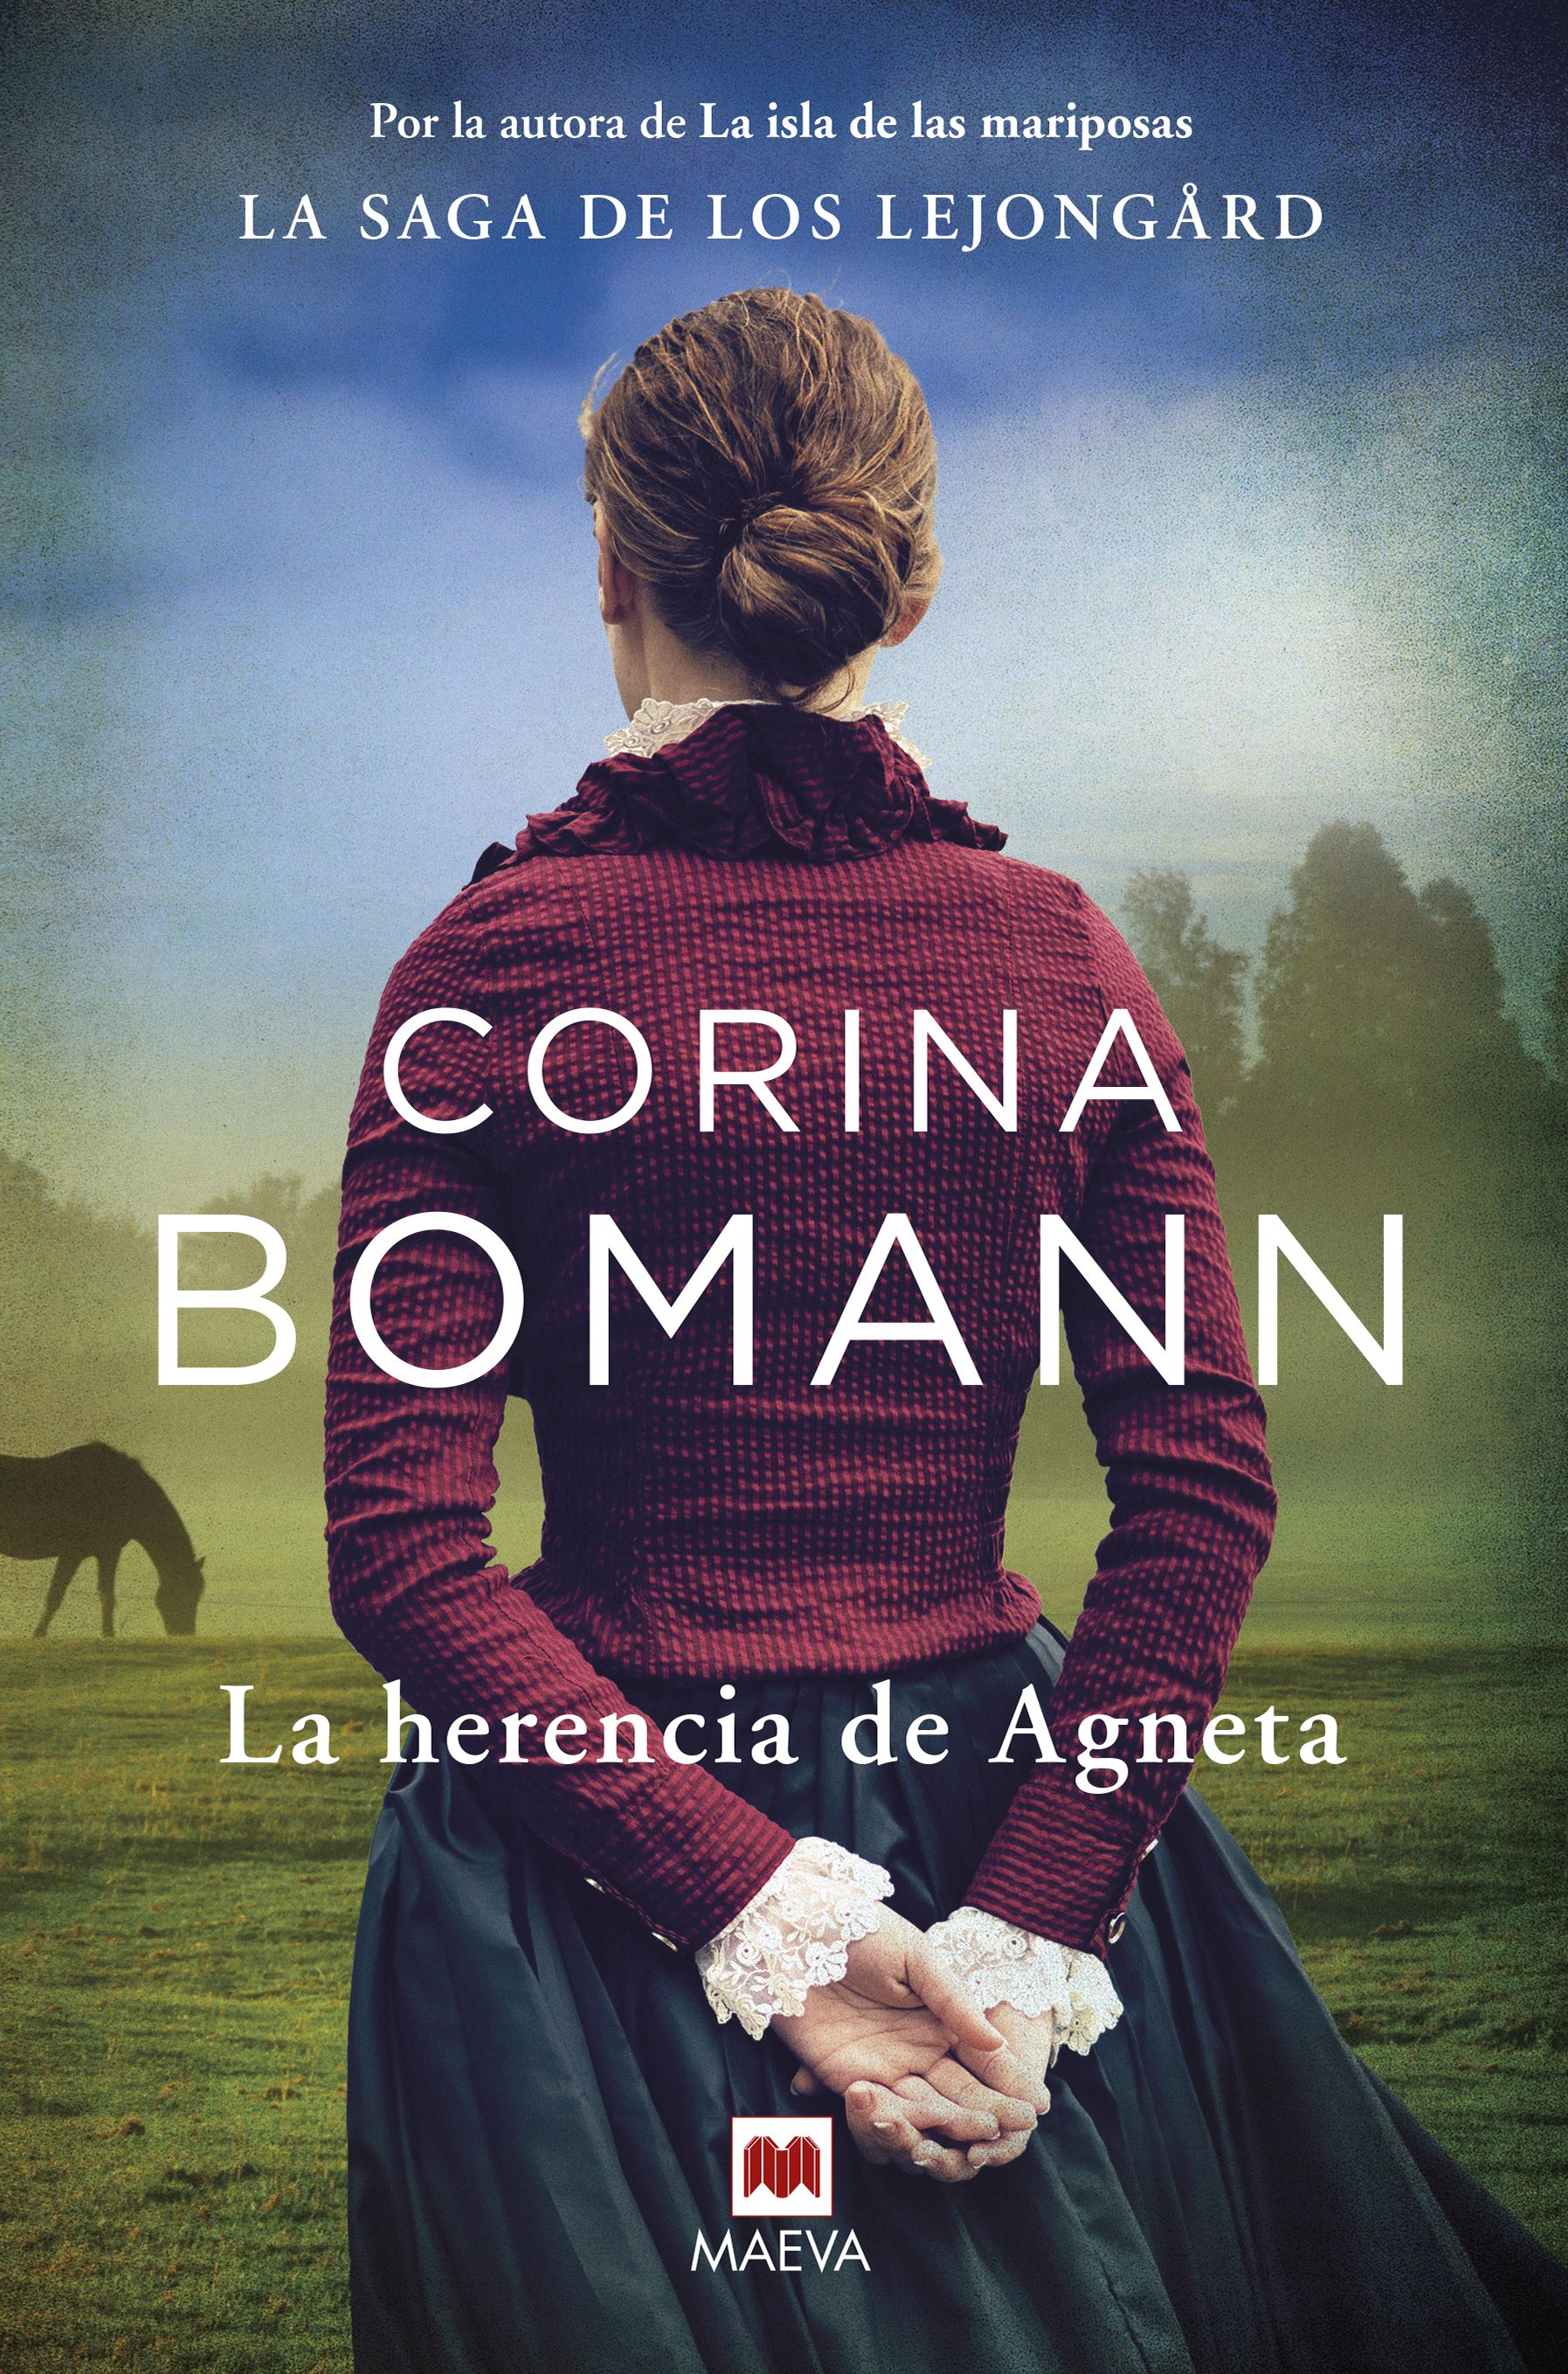 La escritora Corina Bomann lanza el primer volumen de una saga familiar de principios del siglo XX